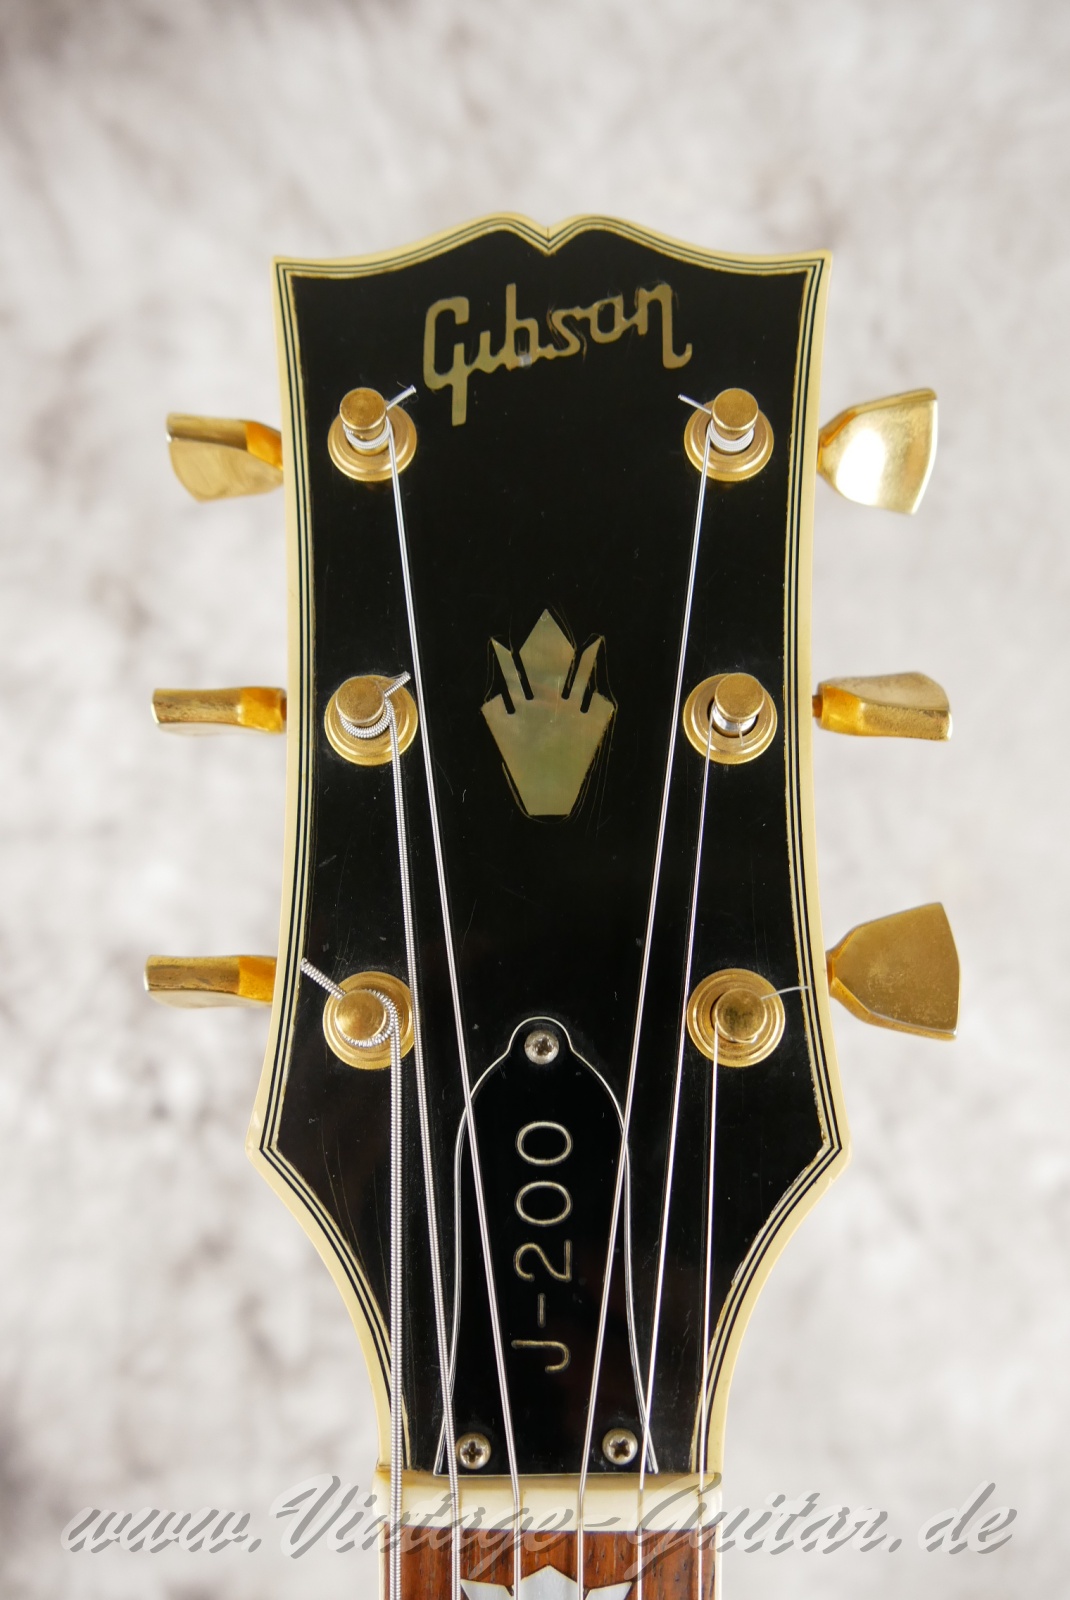 Gibson-J-200-Artist-former-owner-cisco-berndt-truckstop-1974-natural-003.jpg